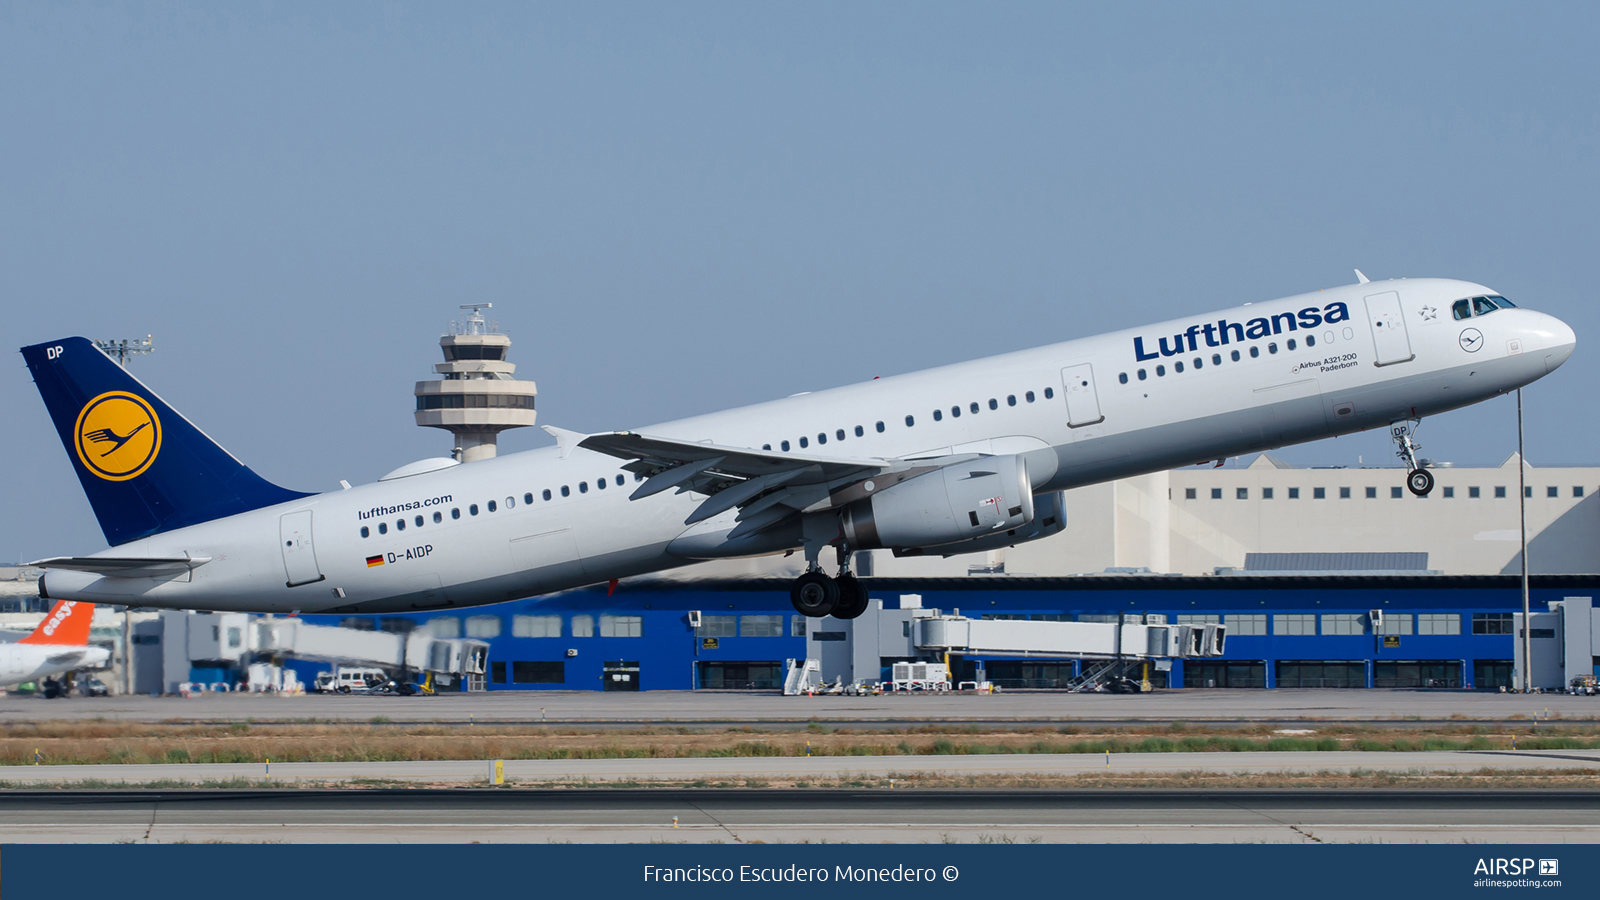 Lufthansa  Airbus A321  D-AIDP